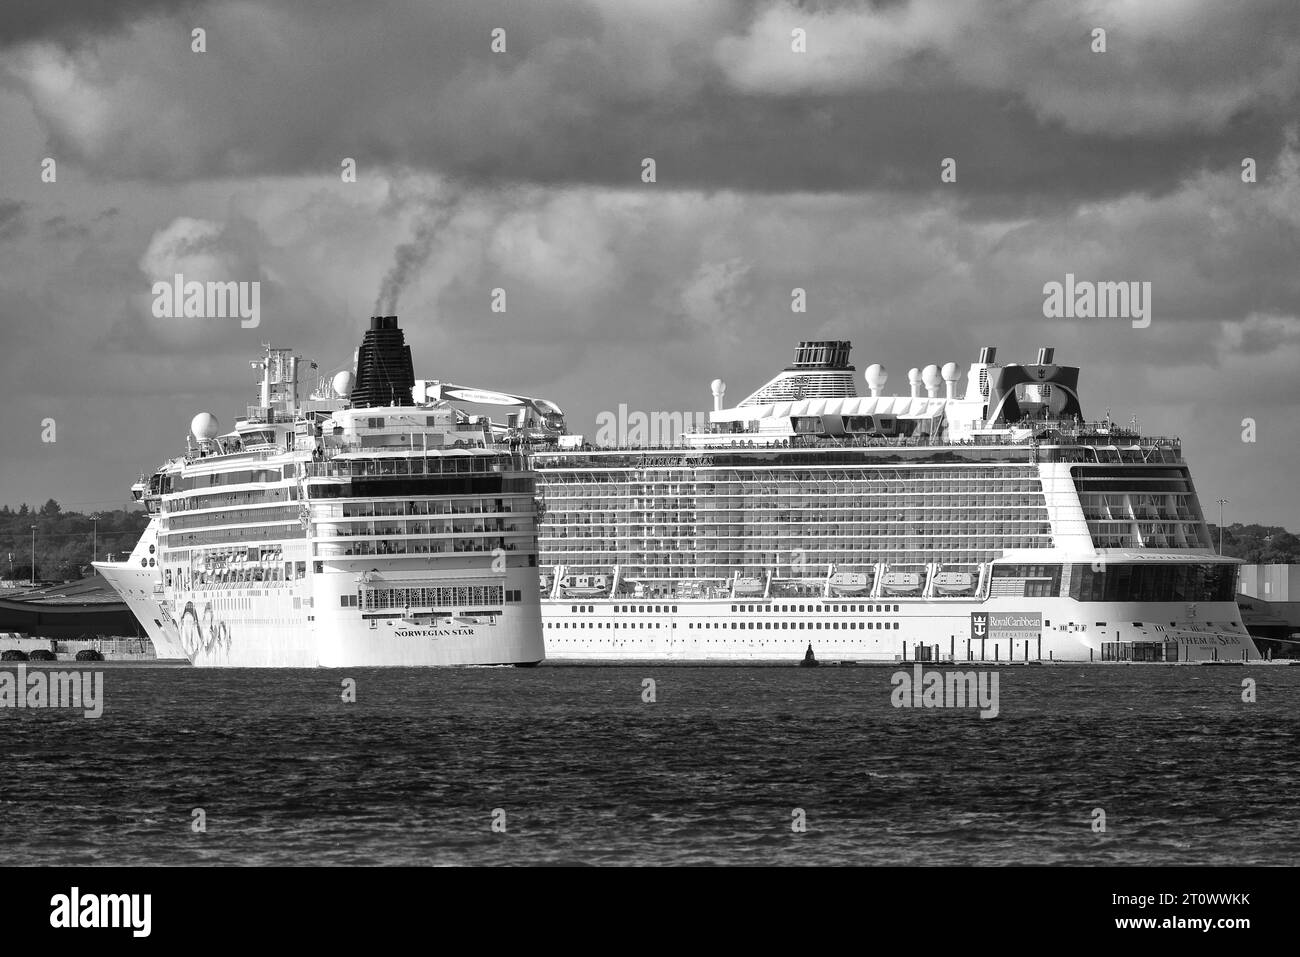 La nave da crociera Norwegian Cruise Line NORWEGIAN STAR, torna dal suo ormeggio nel canale Deep Water al porto di Southampton, Regno Unito Foto Stock